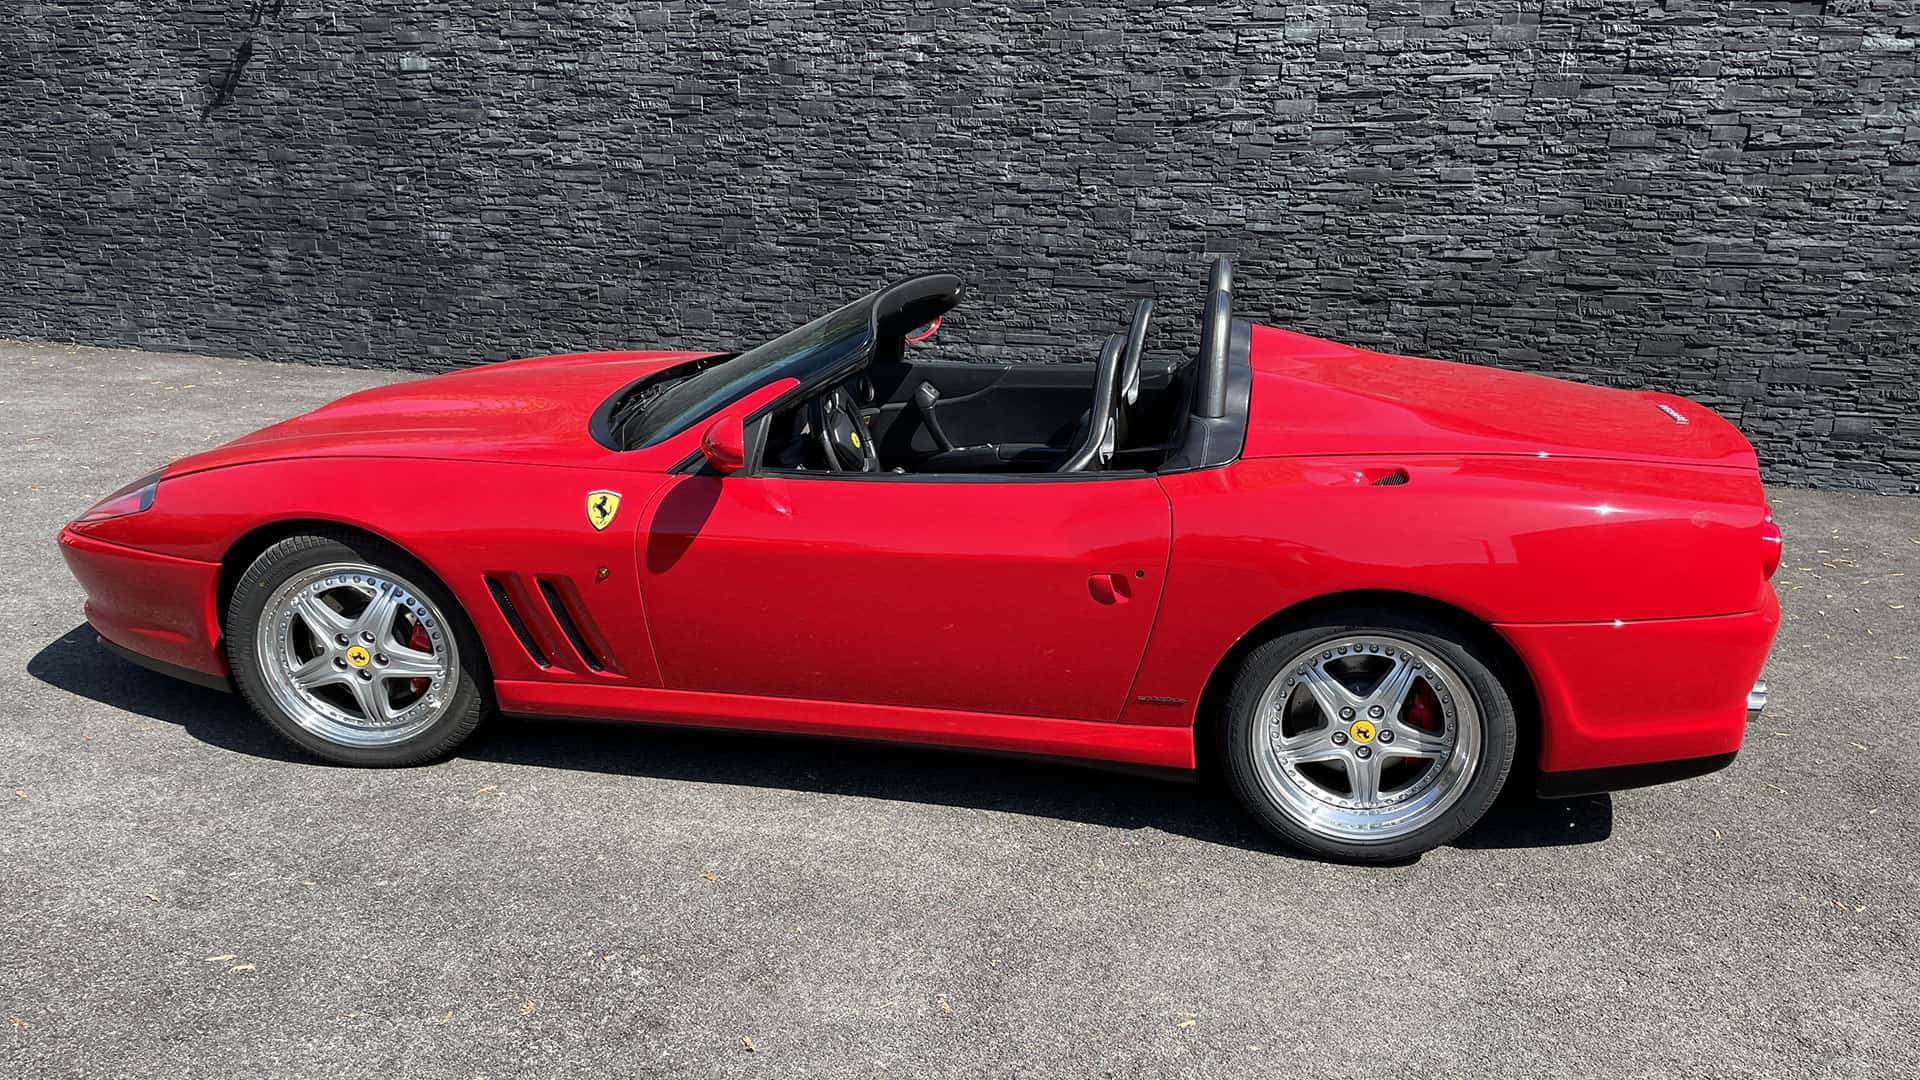 Side view of Ferrari 550 Barchetta